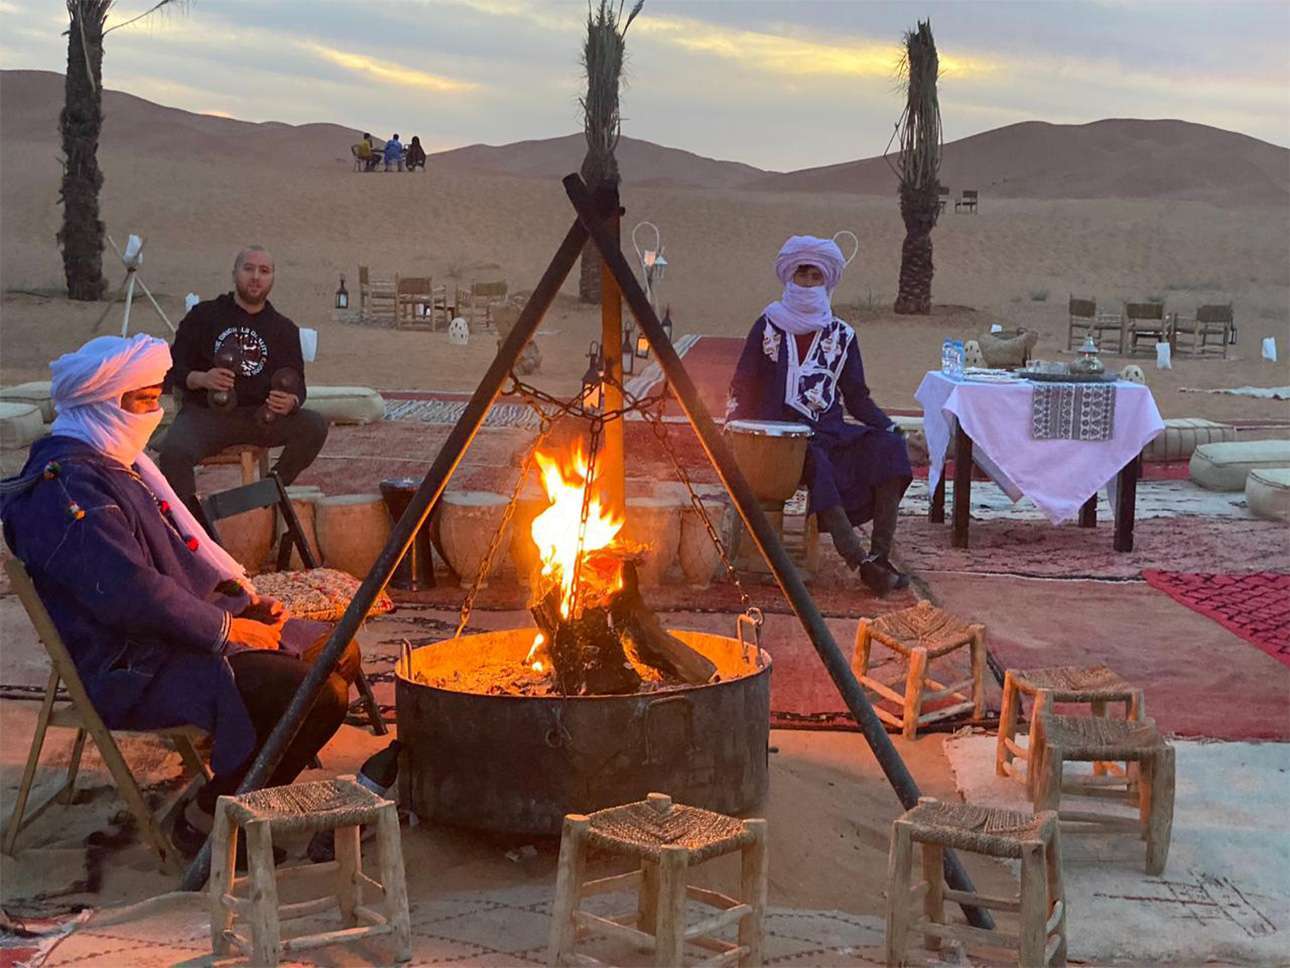 Morocco best sahara desert tours, in desert